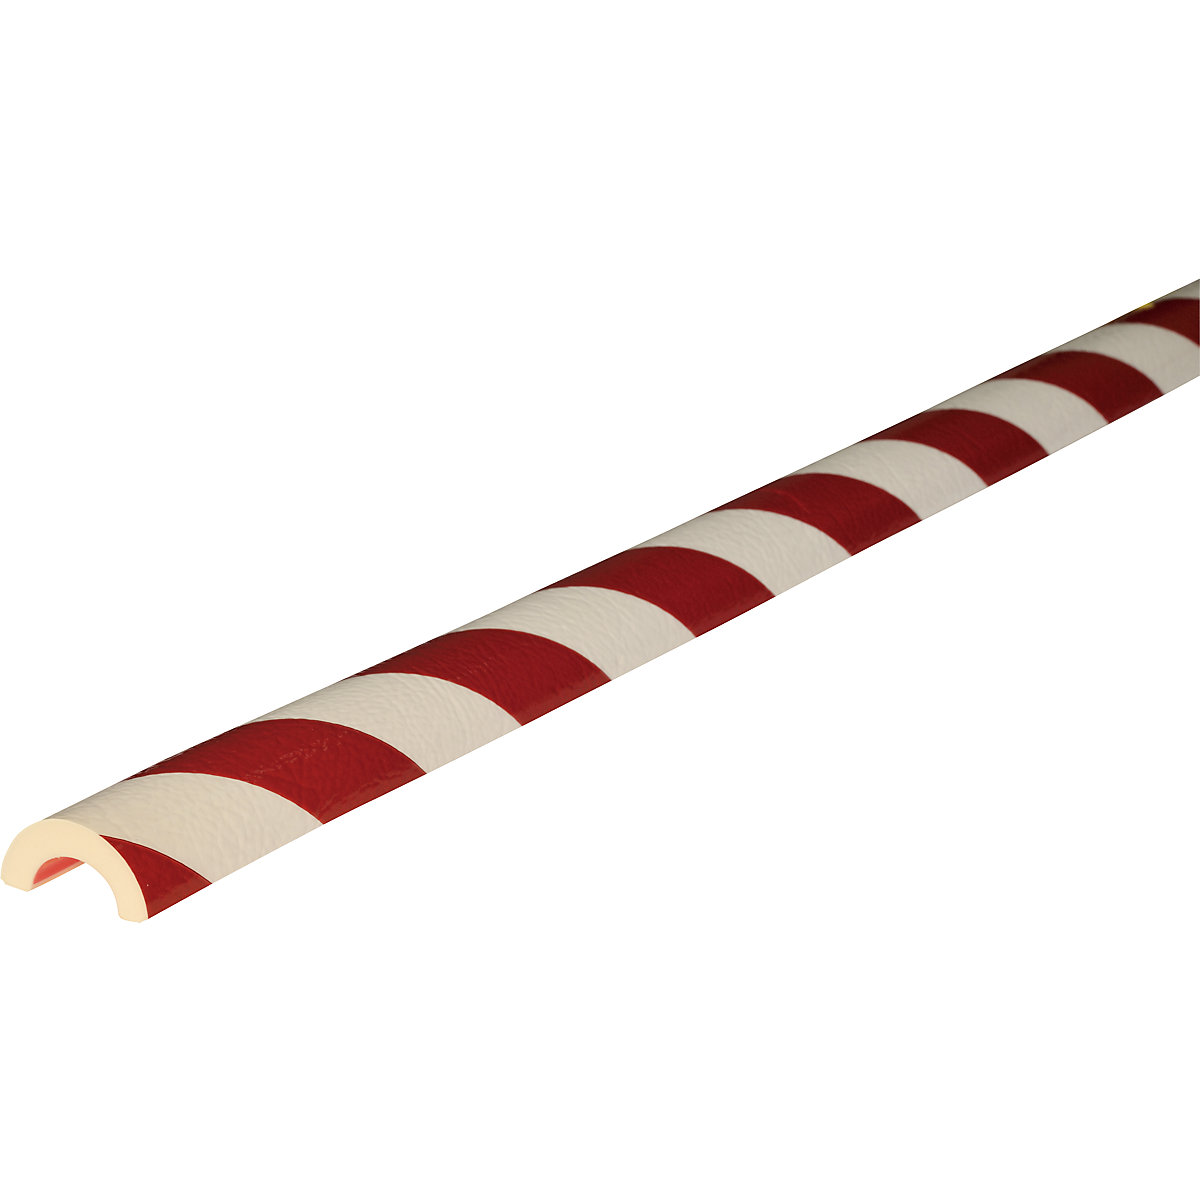 Protección de tubos Knuffi® – SHG, tipo R30, pieza de 1 m, en rojo y blanco-10